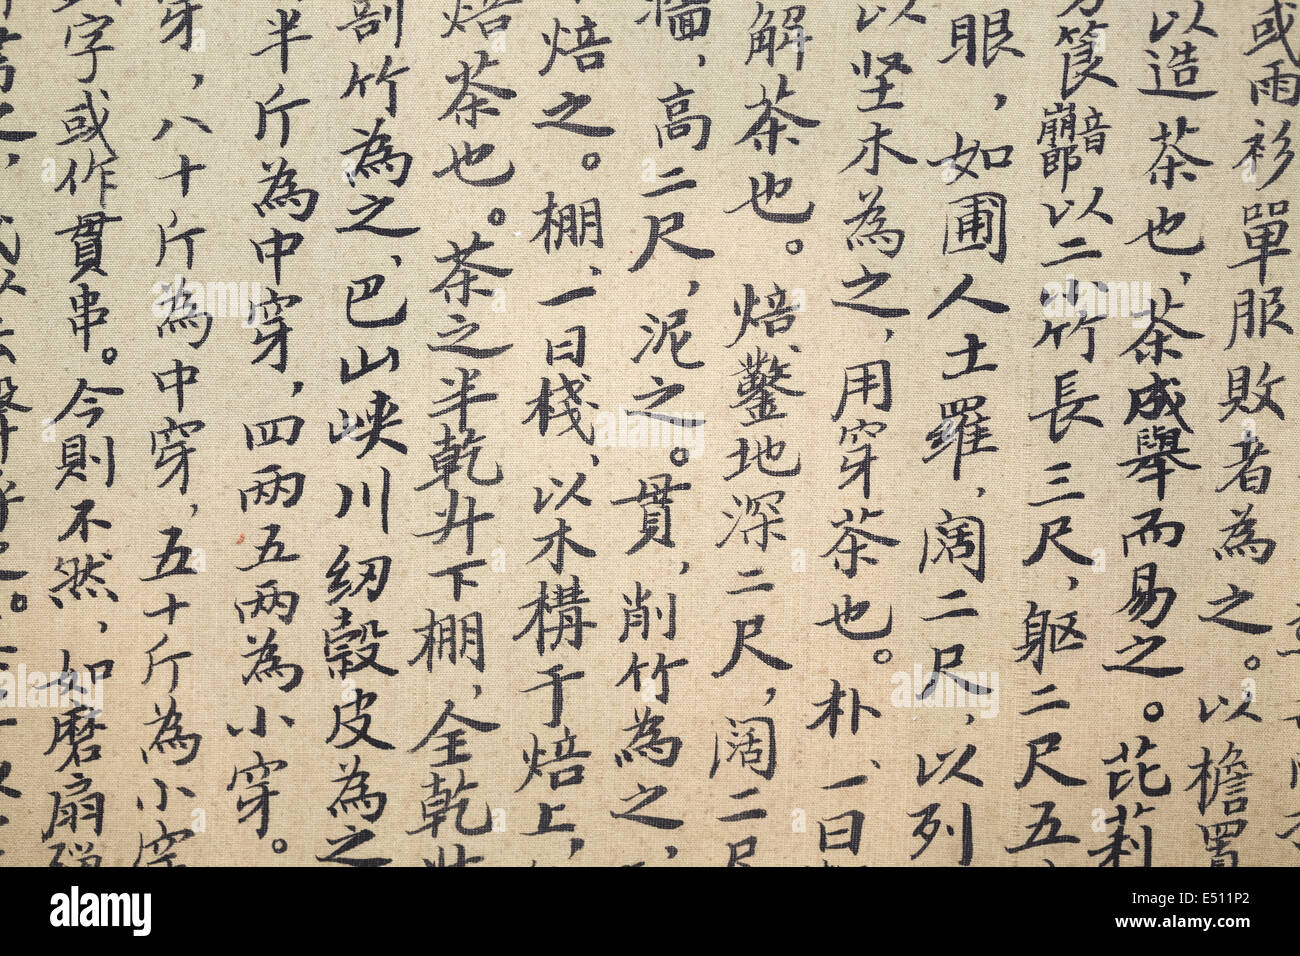 La caligrafía china del té la escritura Foto de stock